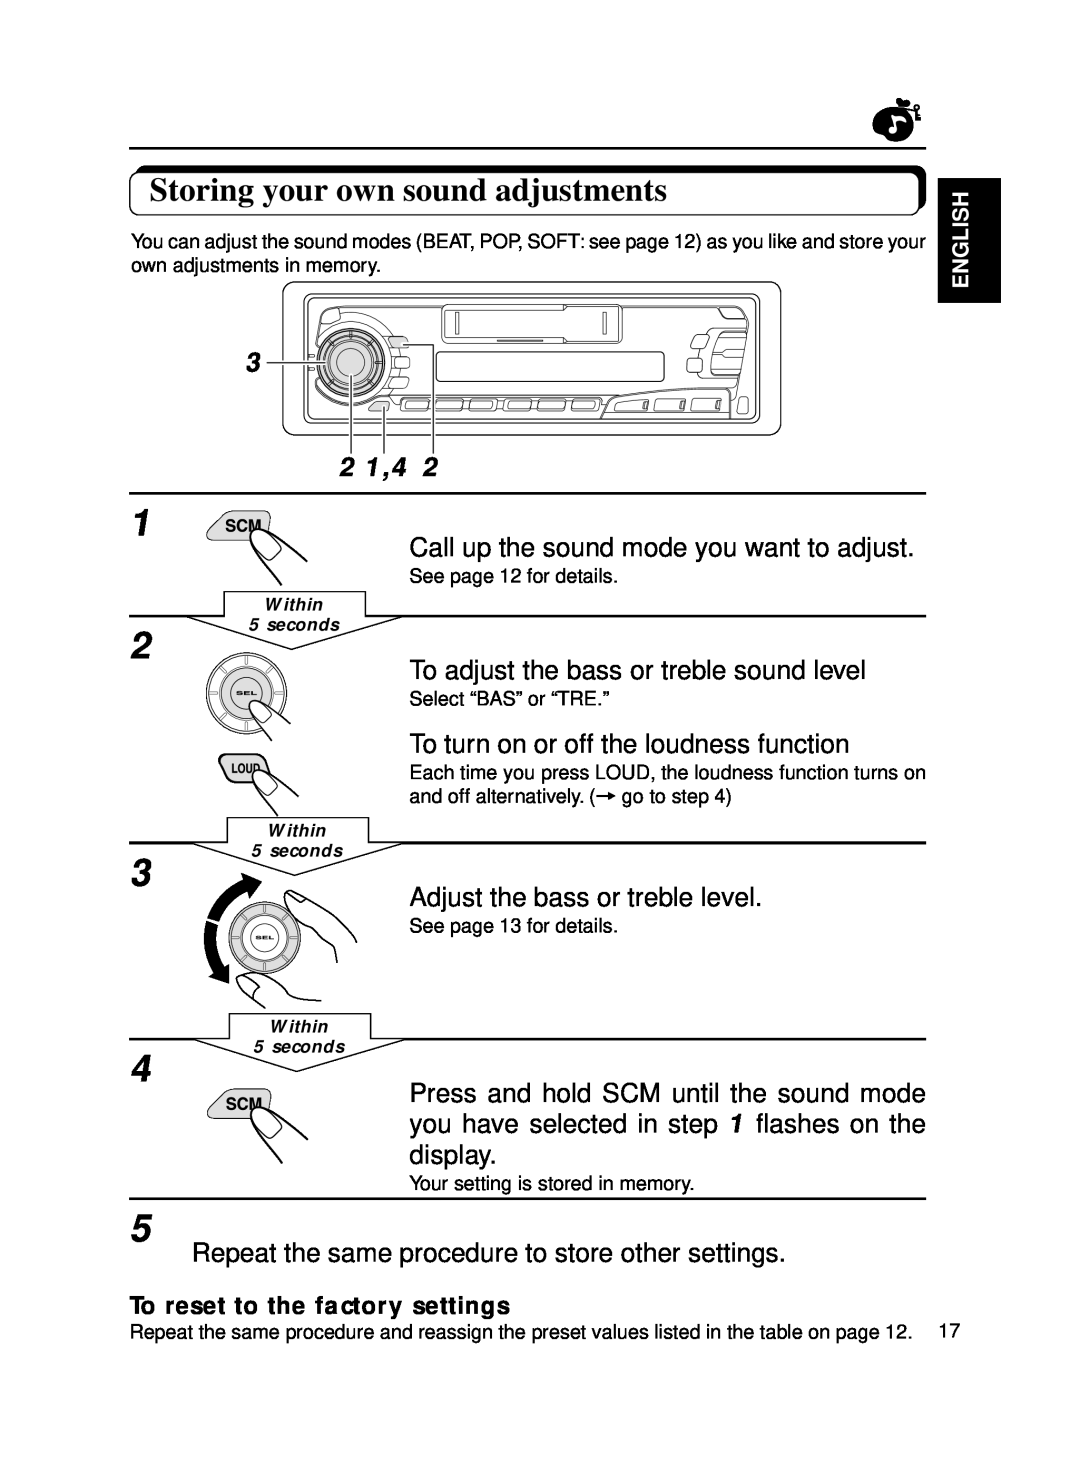 JVC KS-FX250 manual Storing your own sound adjustments, 2 1,4 